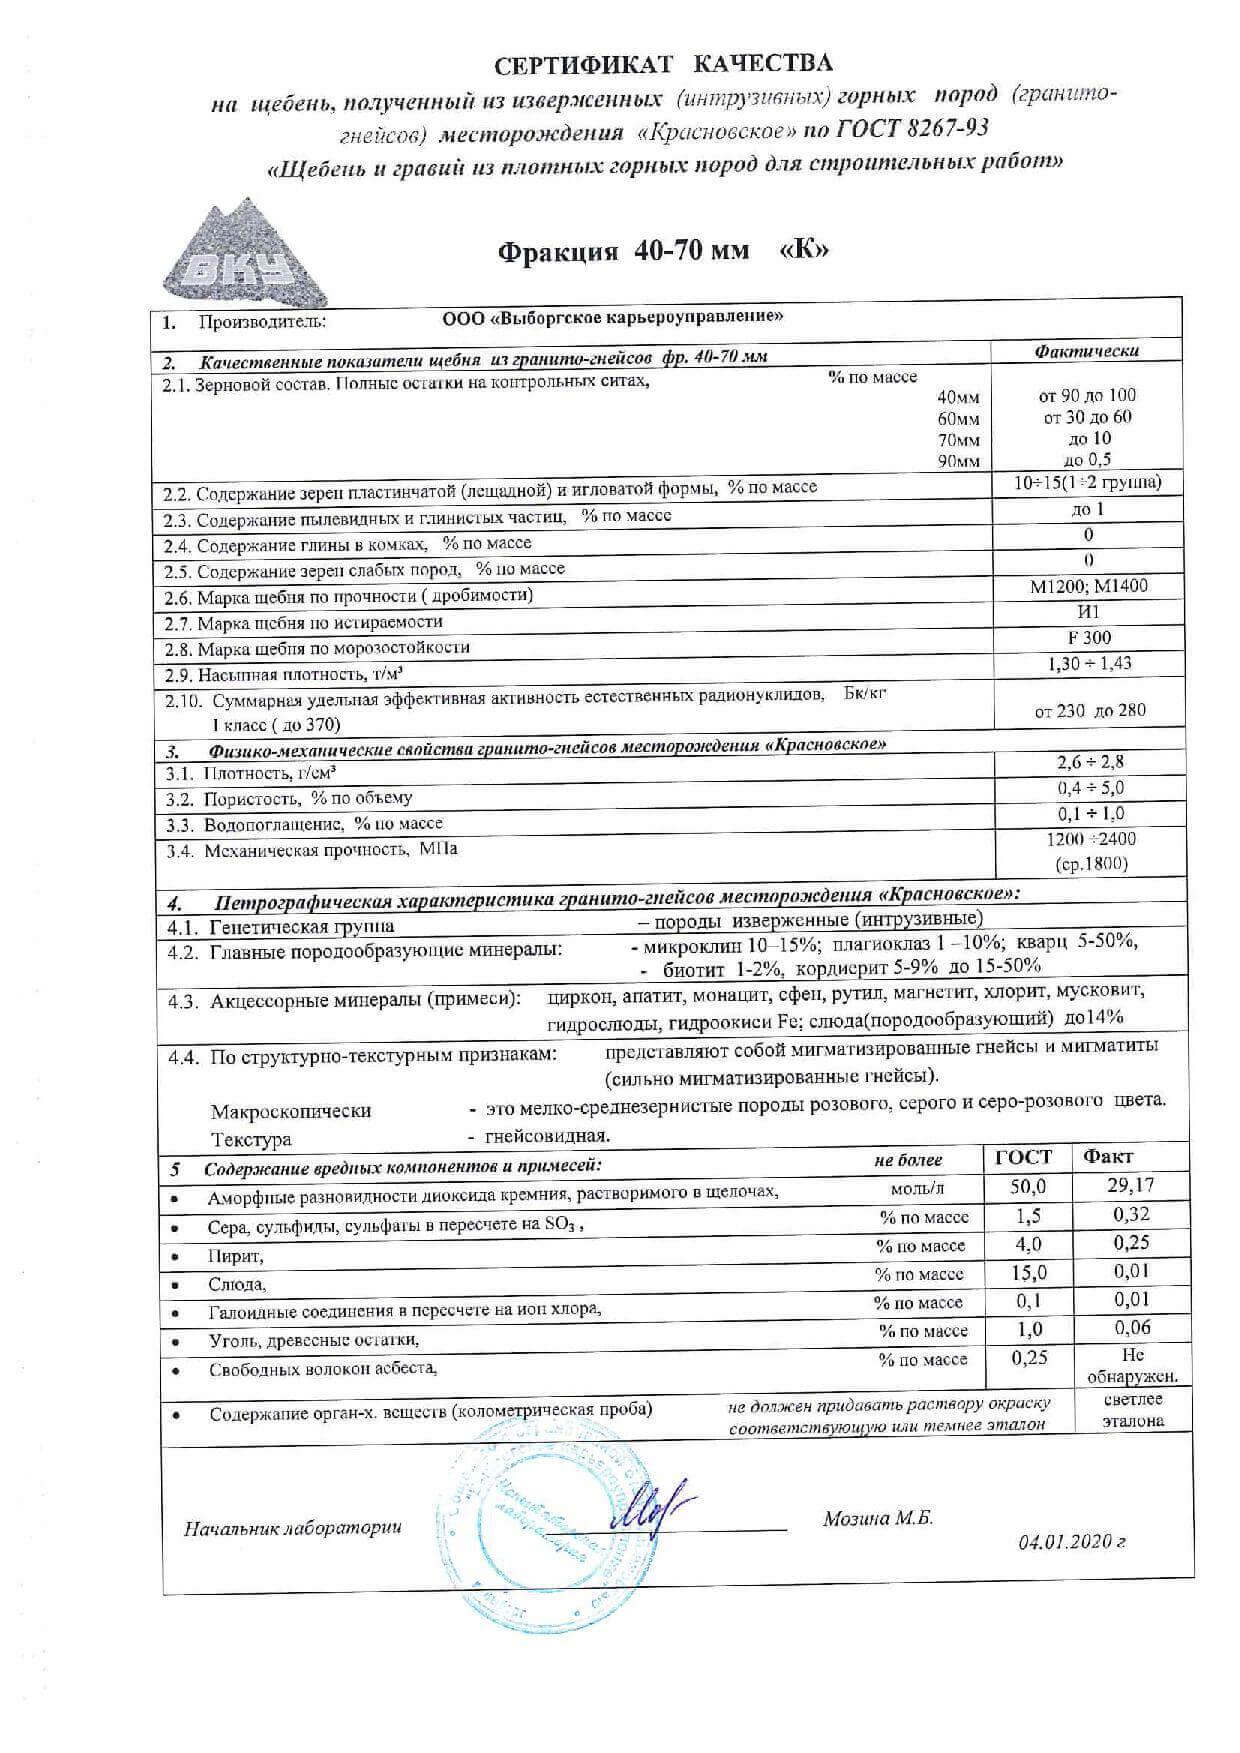 сертификат на щебень гравийный фр 40-70